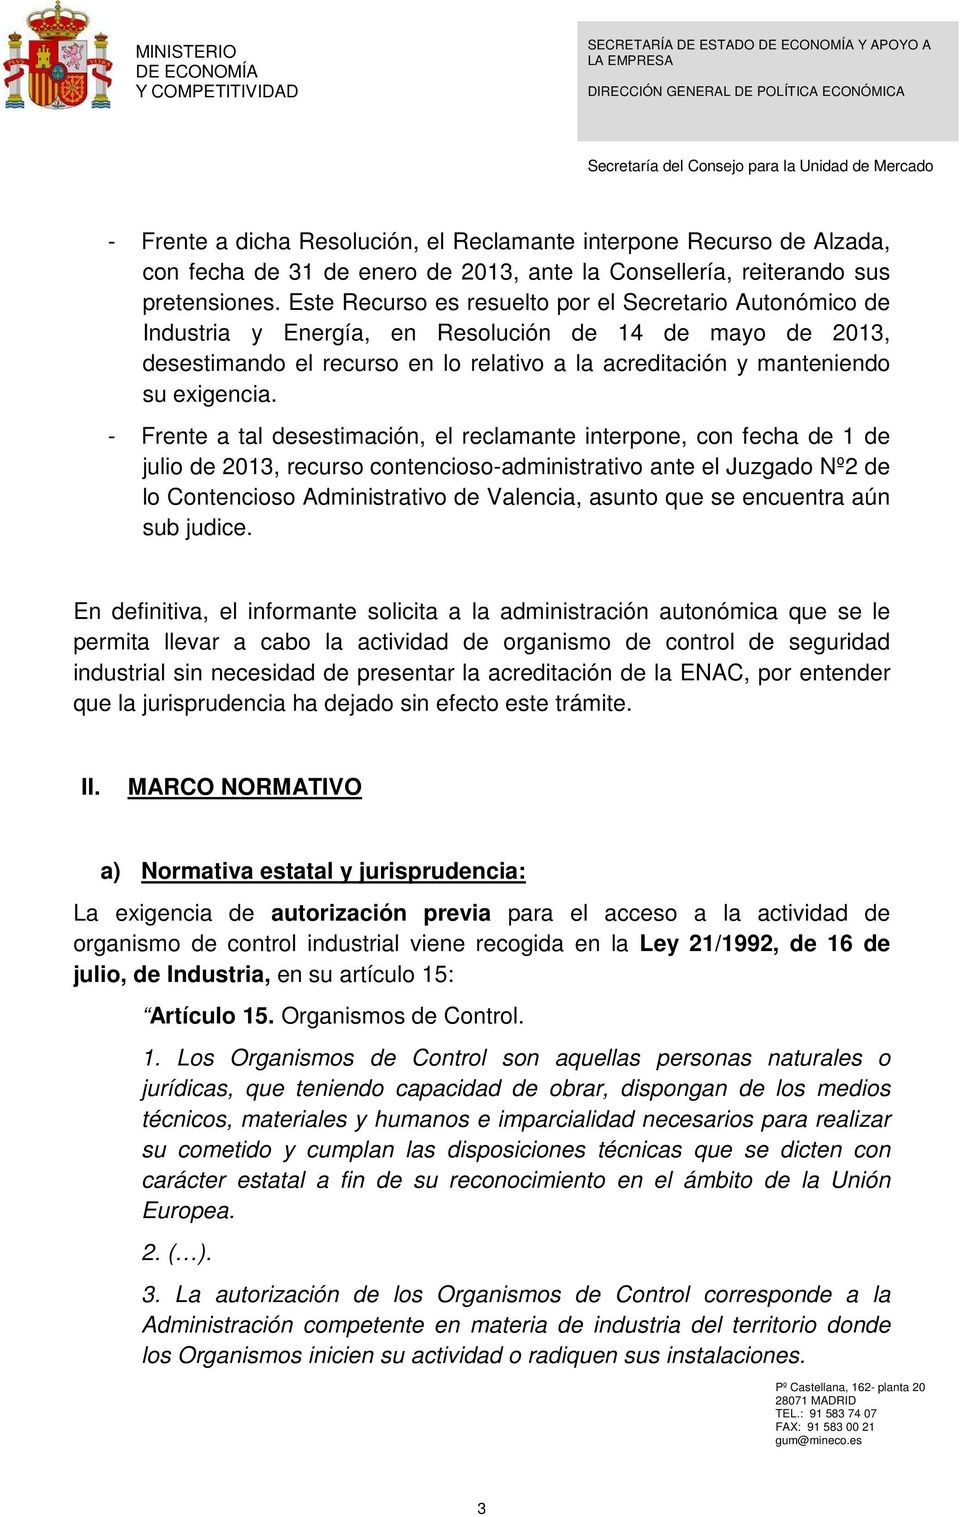 - Frente a tal desestimación, el reclamante interpone, con fecha de 1 de julio de 2013, recurso contencioso-administrativo ante el Juzgado Nº2 de lo Contencioso Administrativo de Valencia, asunto que